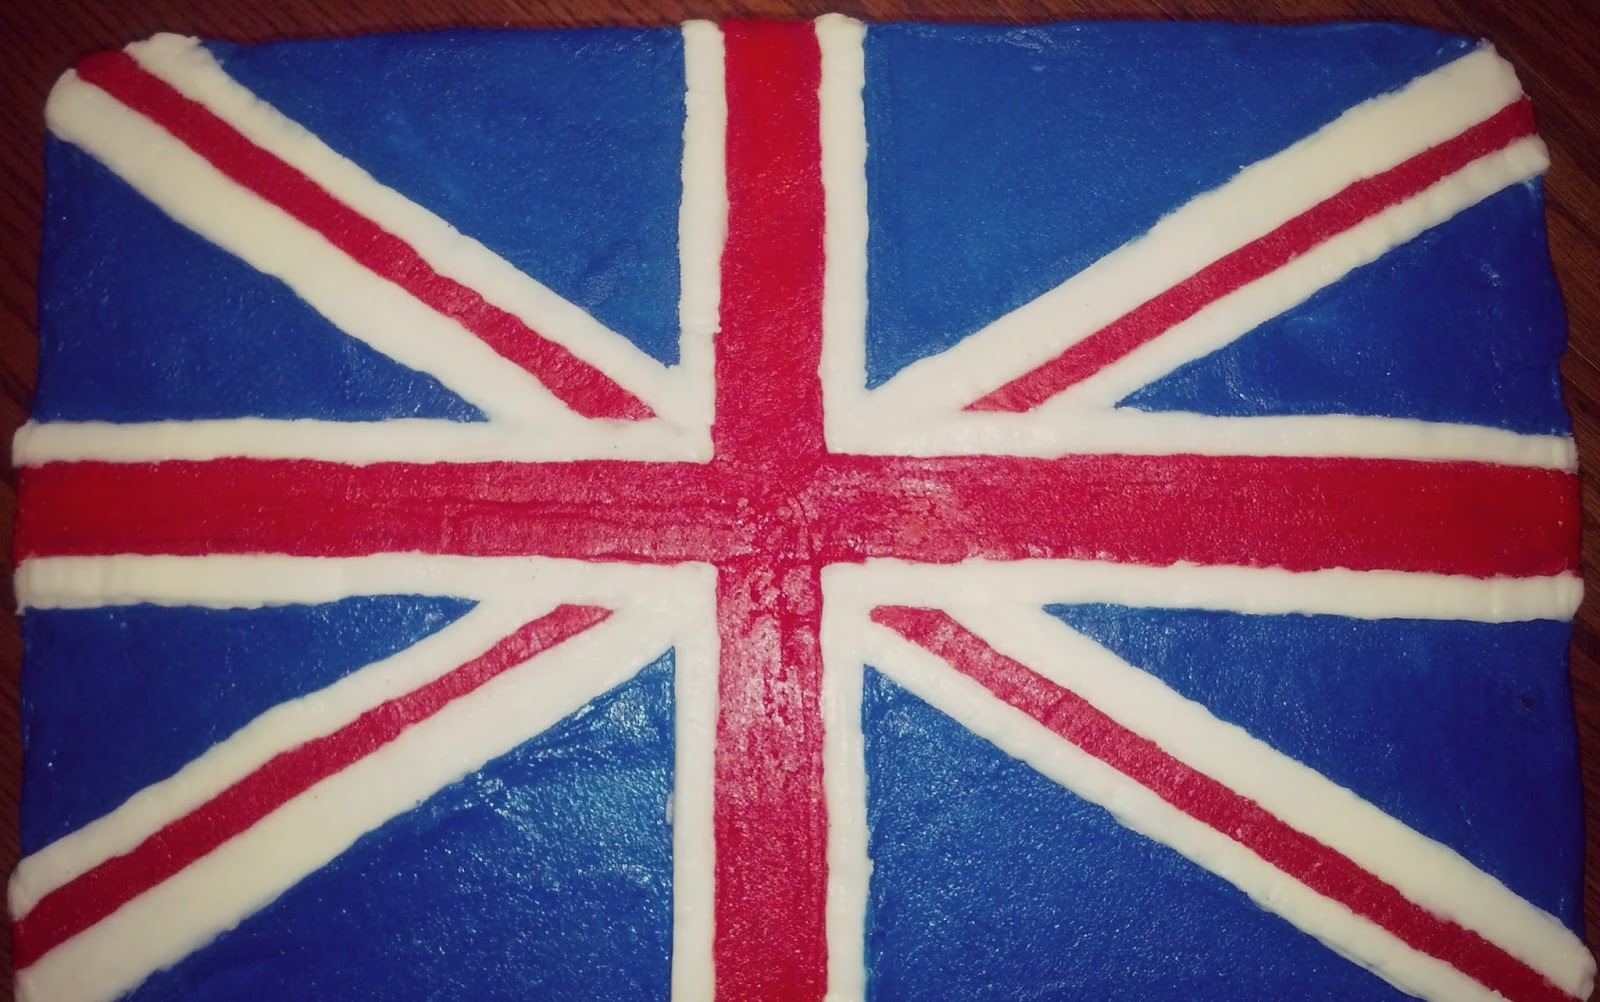 kristilovescakes: Monster High and the British Flag